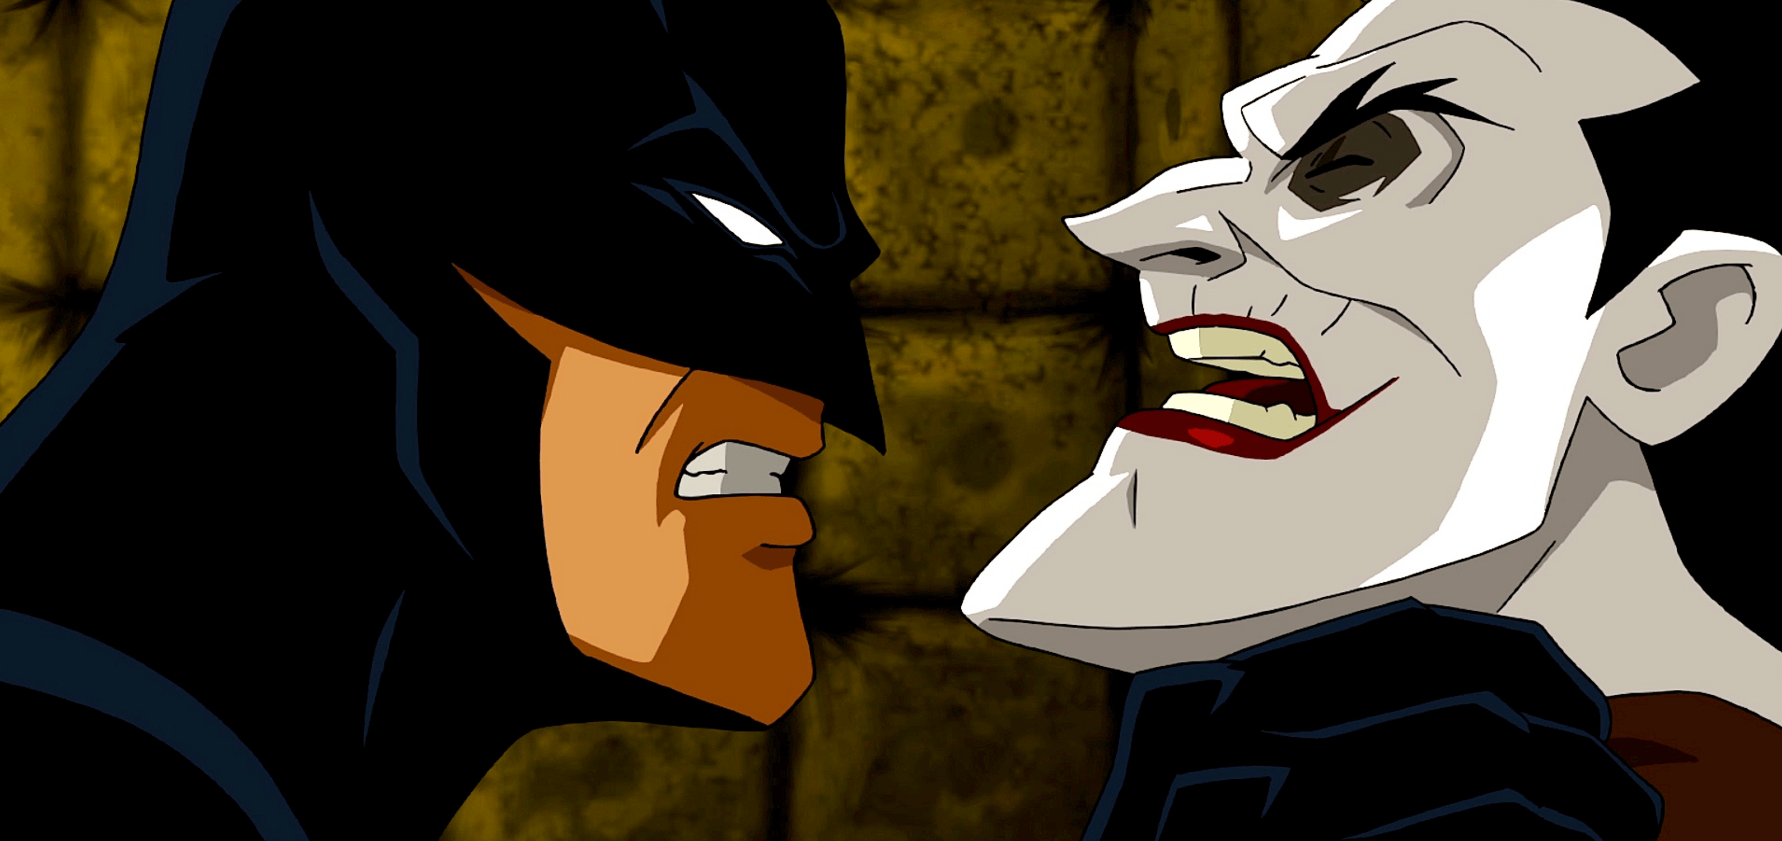 John DiMaggio - a voz de Bender em “Futurama” e Jake em “Adventure Time” aparece aqui como forte concorrência a Mark Hamill para o lugar de “melhor Joker”.